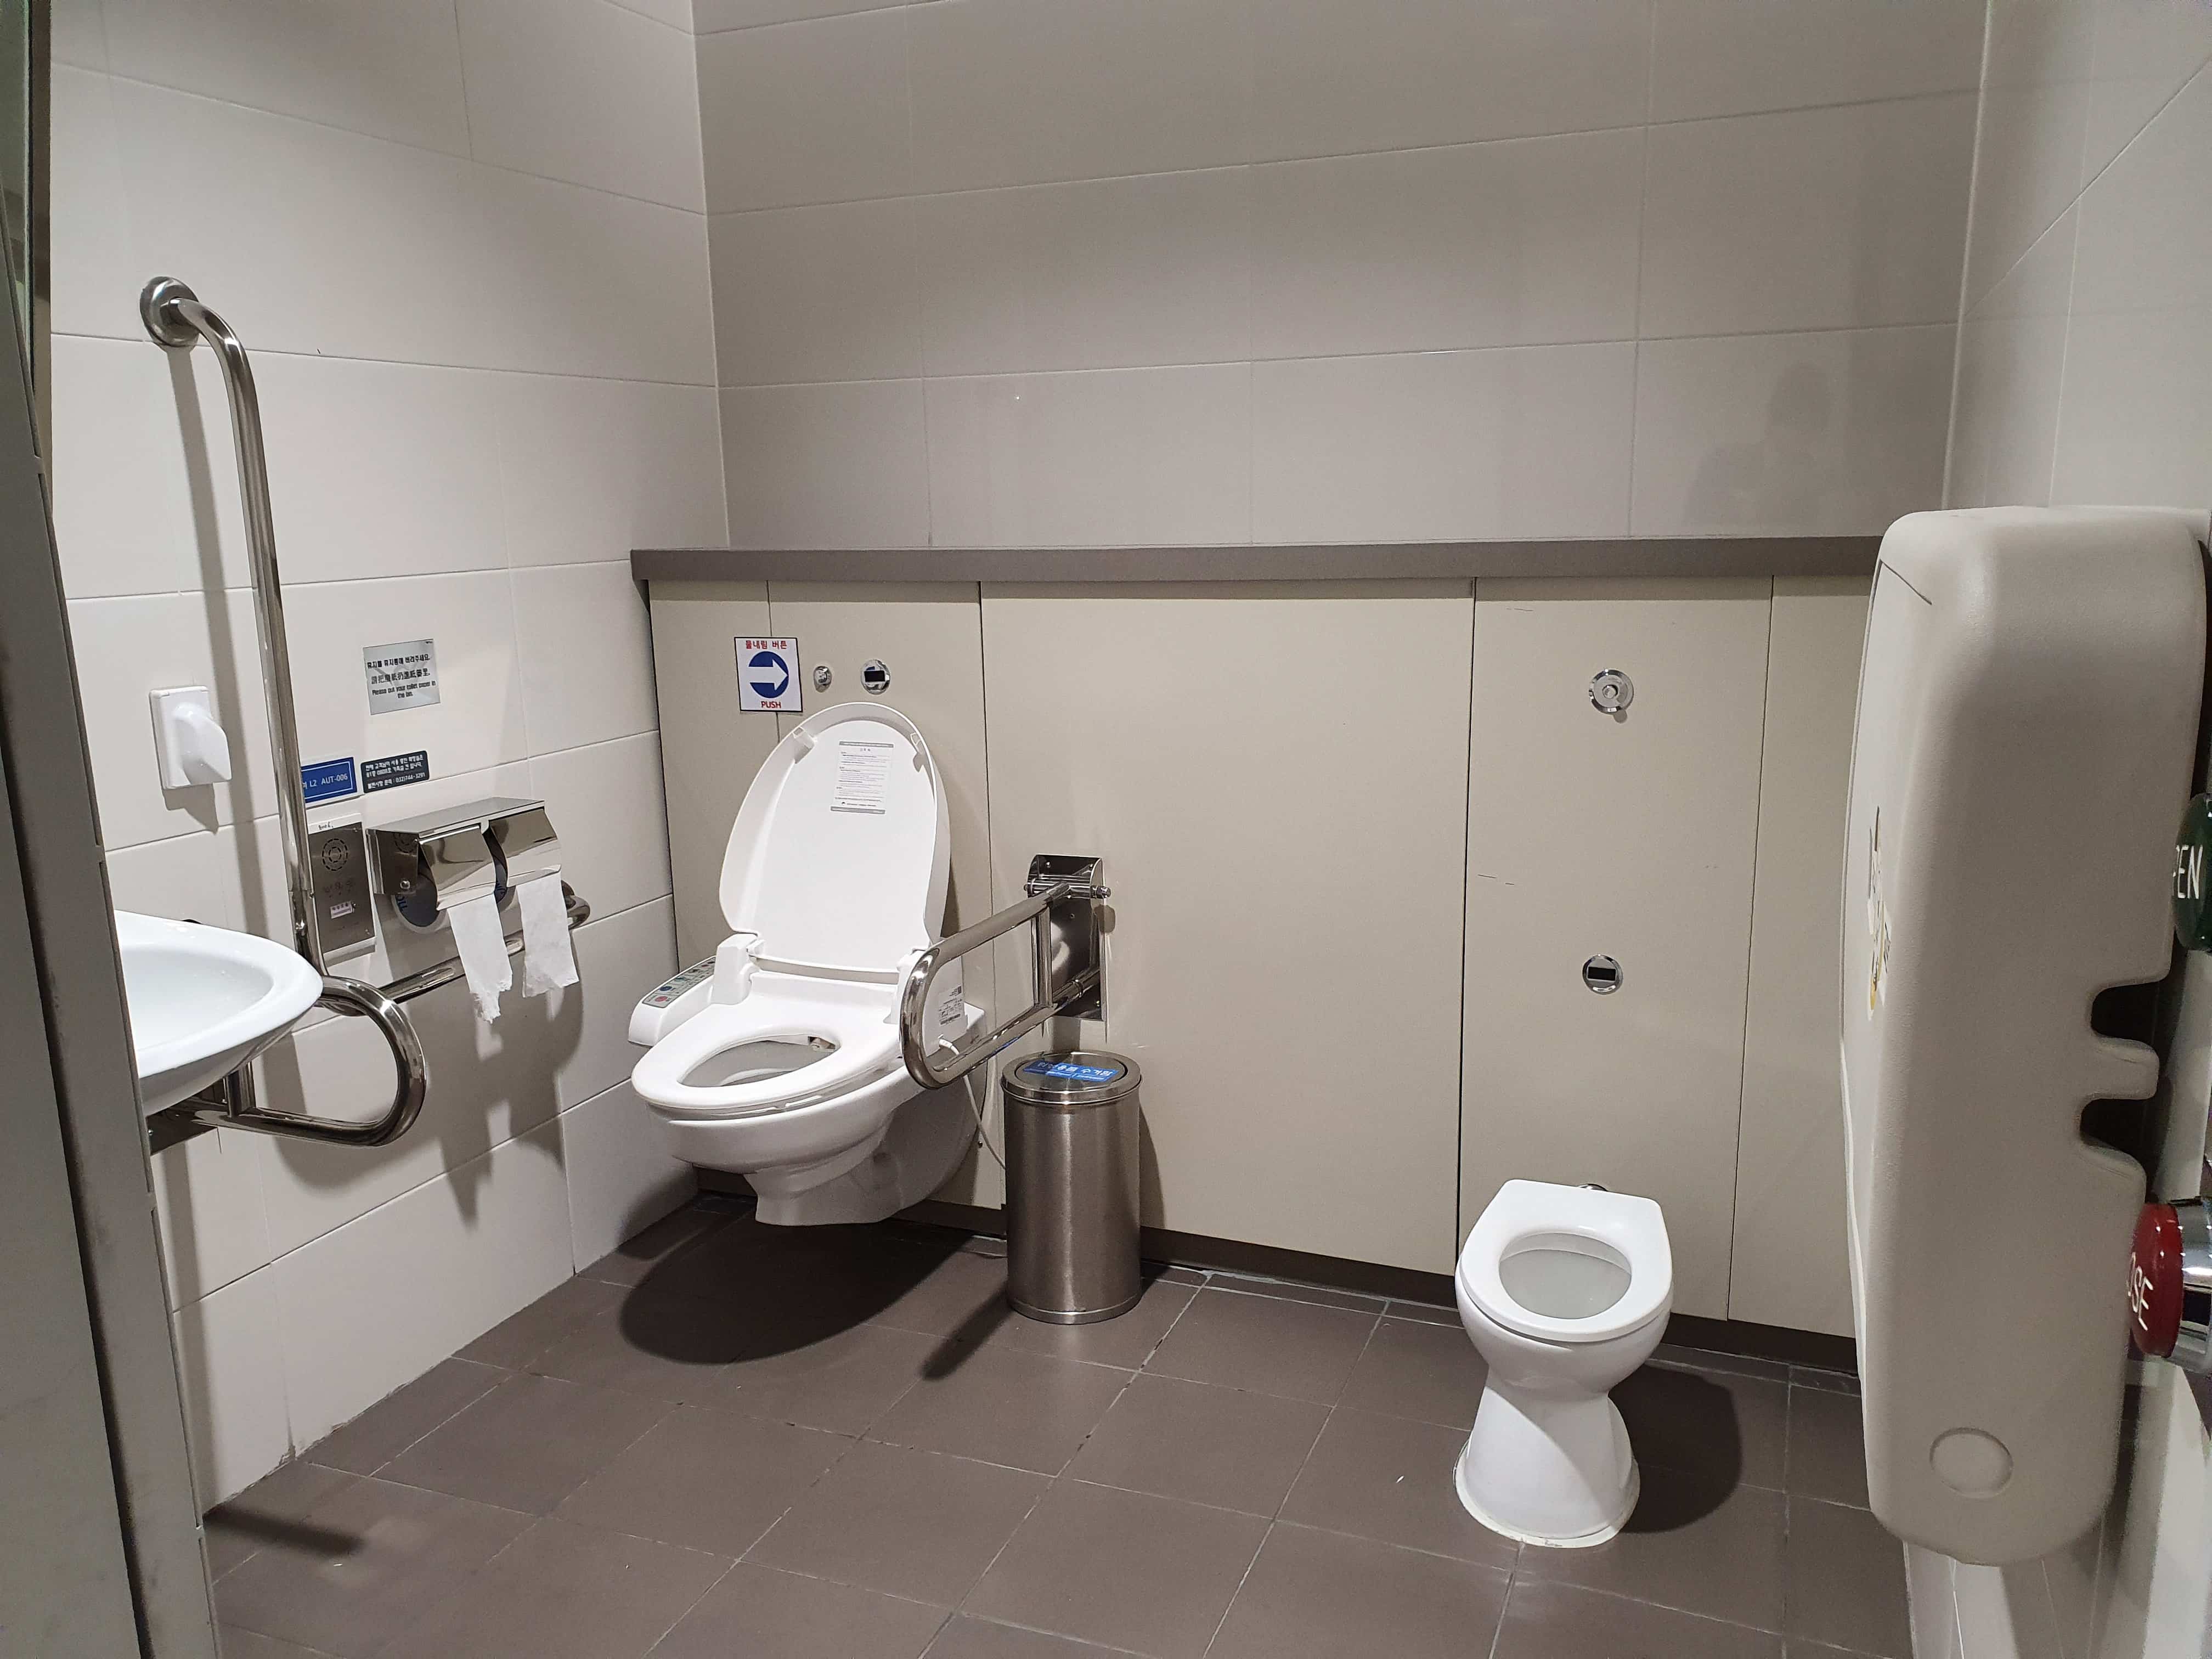 장애인 화장실 0 : 인천국제공항 제2여객터미널 내에 위치한 장애인 화장실 내부 전경. 휠체어 사용자가 편하게 이용할 수 있는 안전바와 기저귀 교환대, 소아용 변기가 있다.